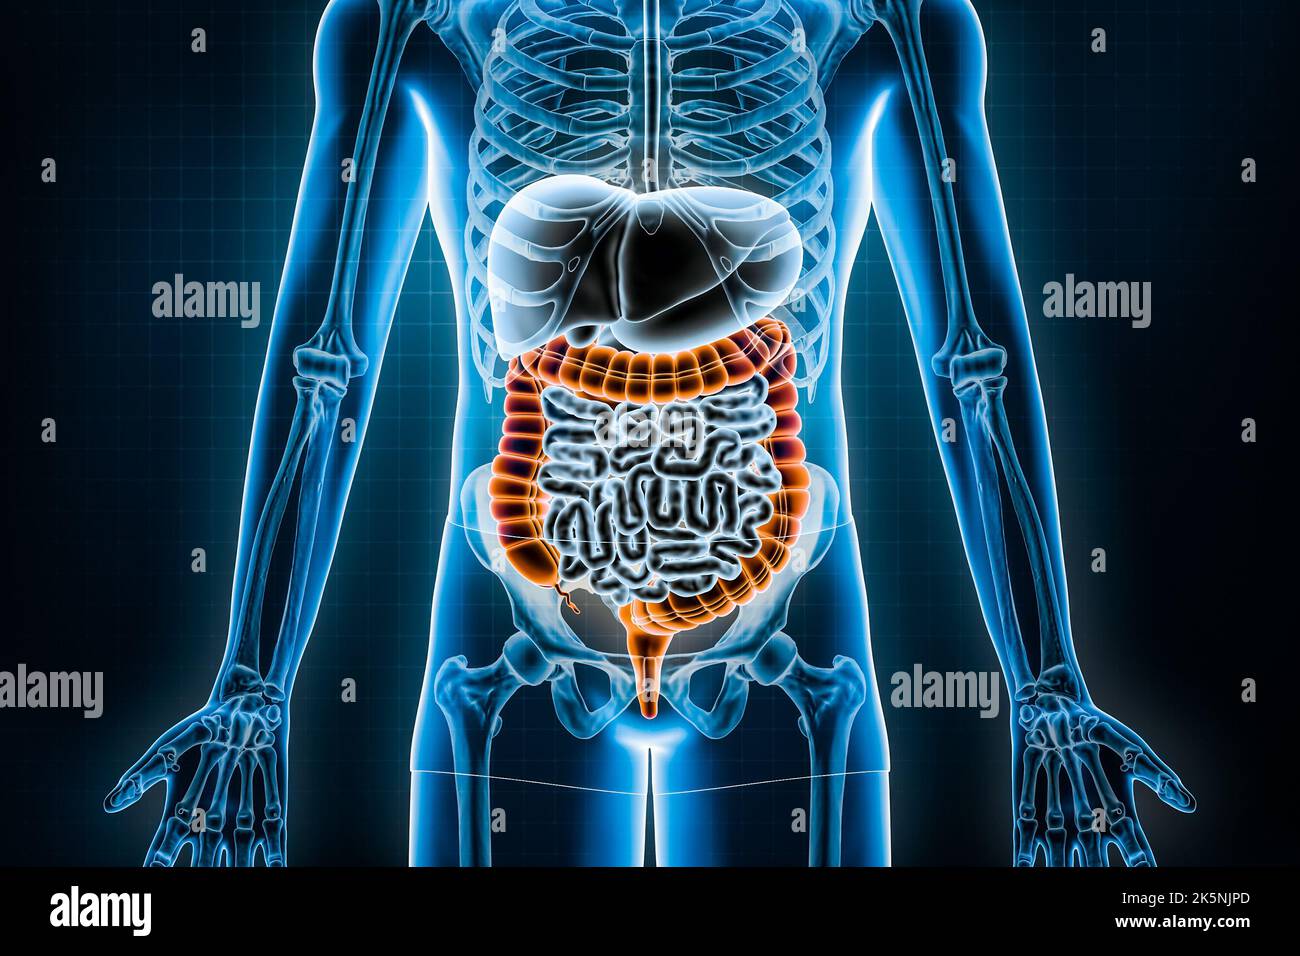 Illustrazione del rendering dell'intestino crasso 3D. Vista anteriore o anteriore dell'apparato digerente umano e del tratto gastrointestinale o dell'intestino. Anatomia, medicina Foto Stock